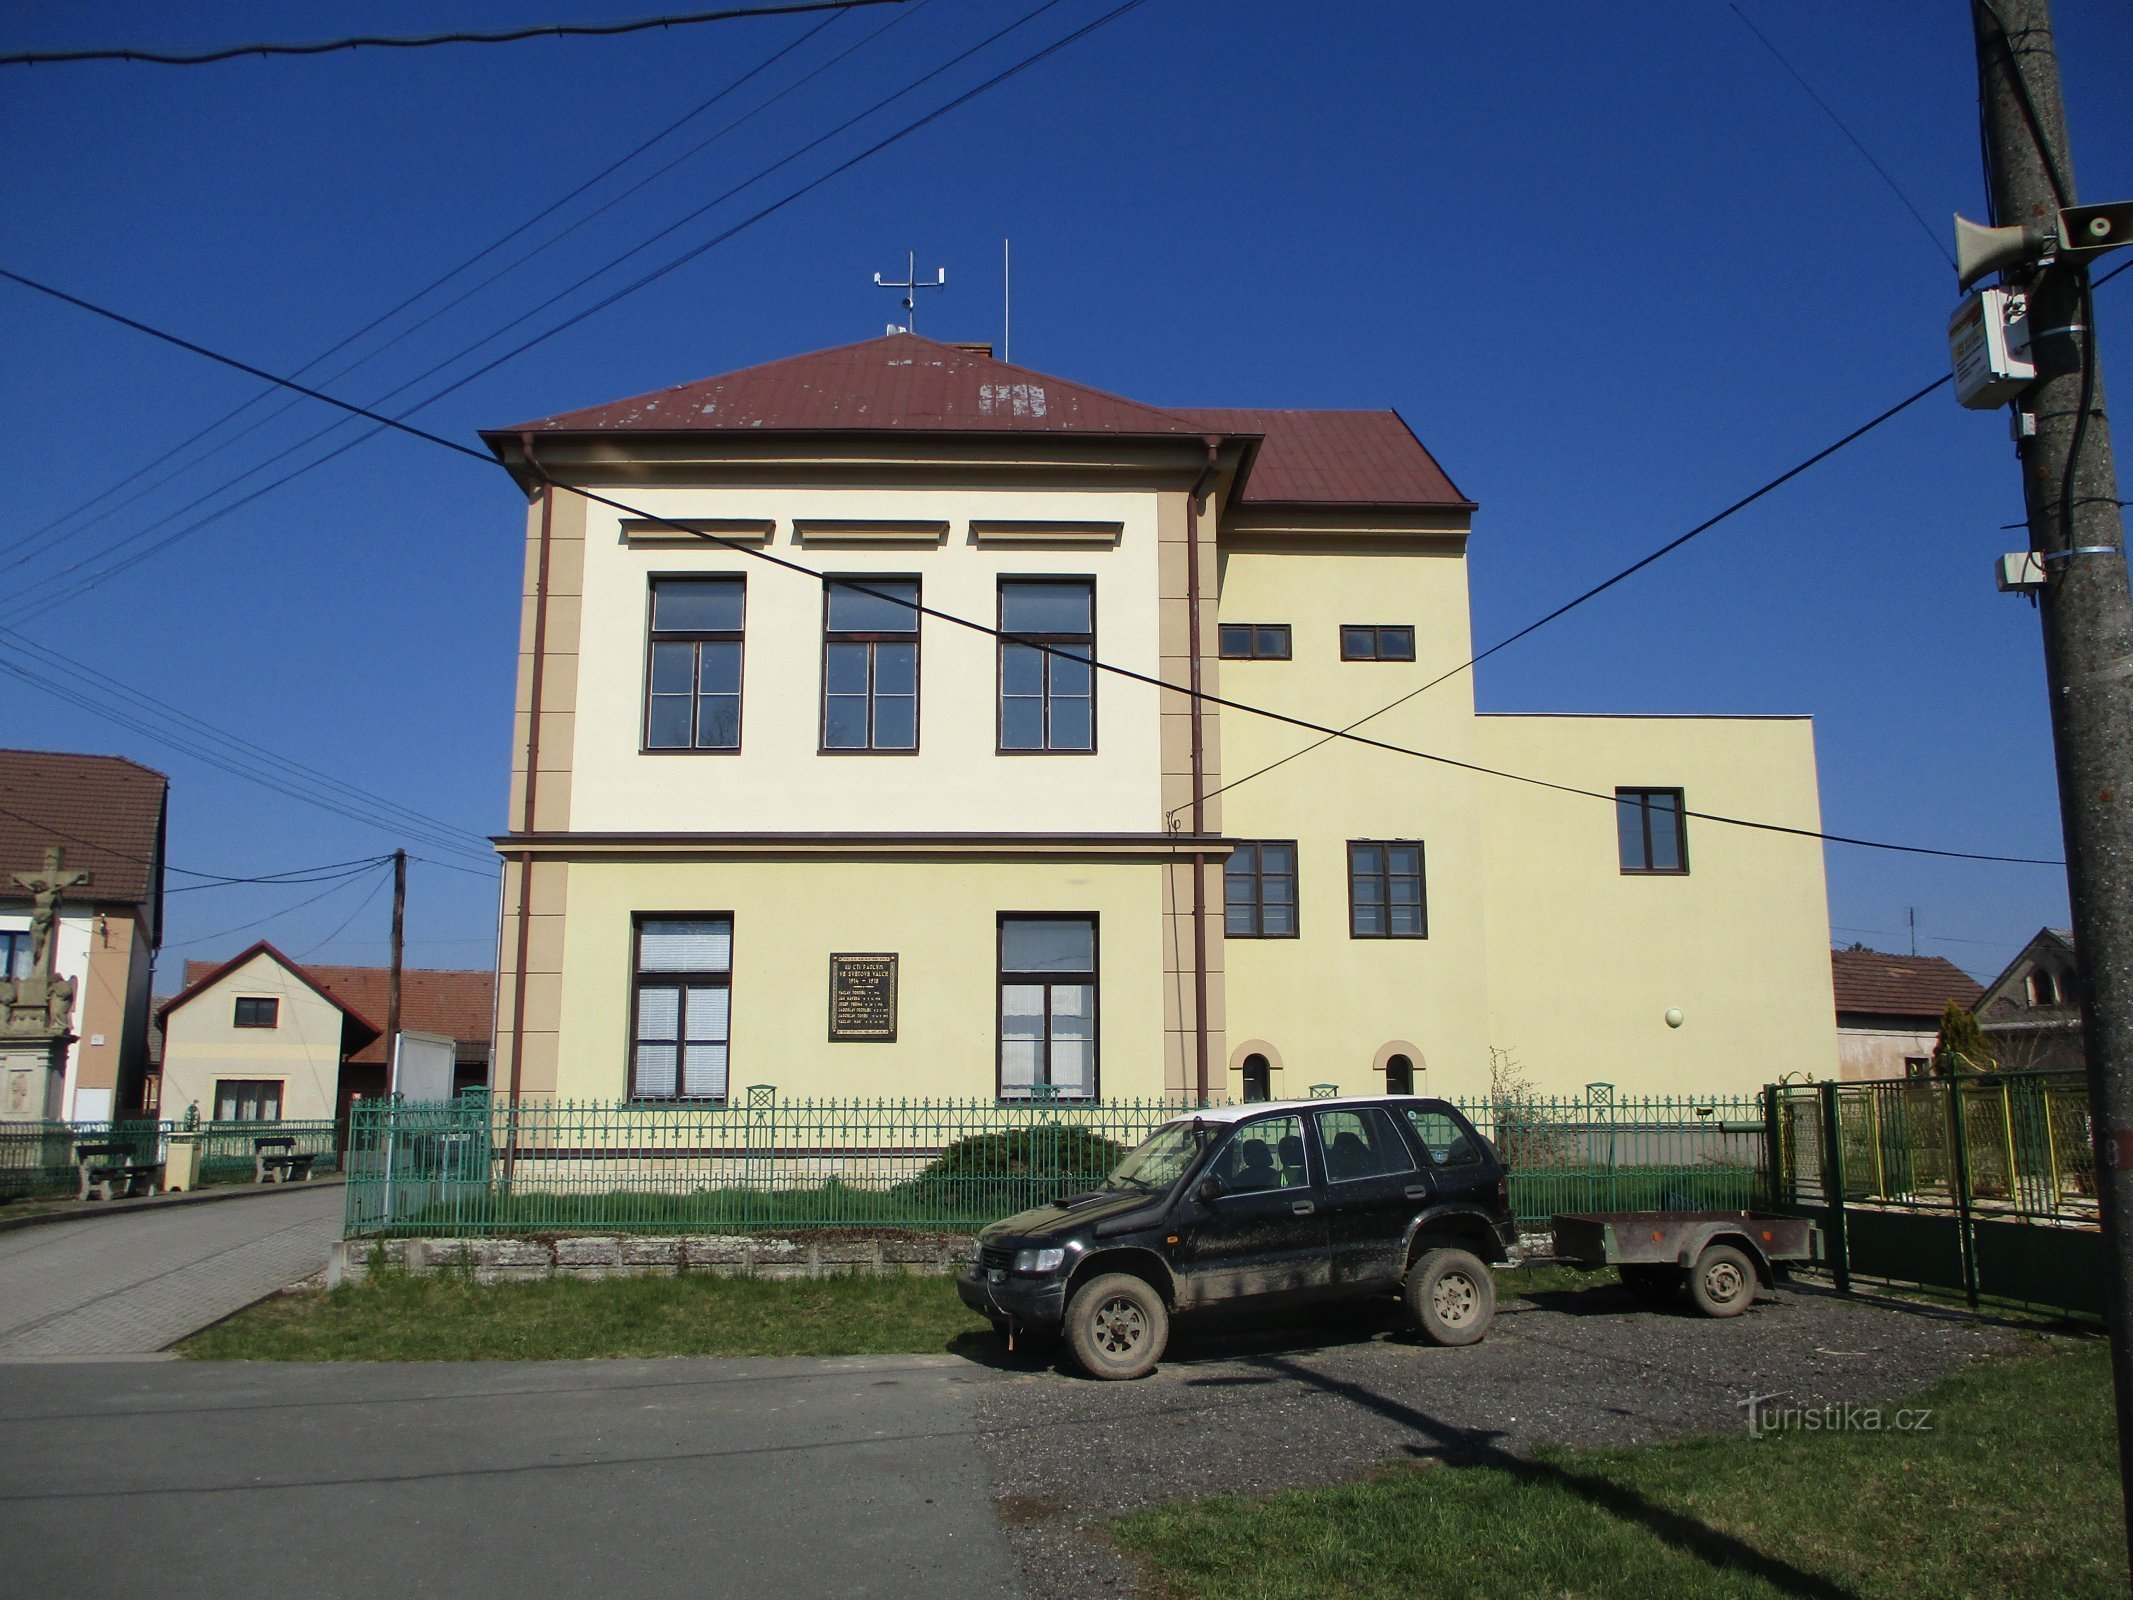 Escuela con extensión (Račice nad Trotinou, 2.4.2020 de abril de XNUMX)